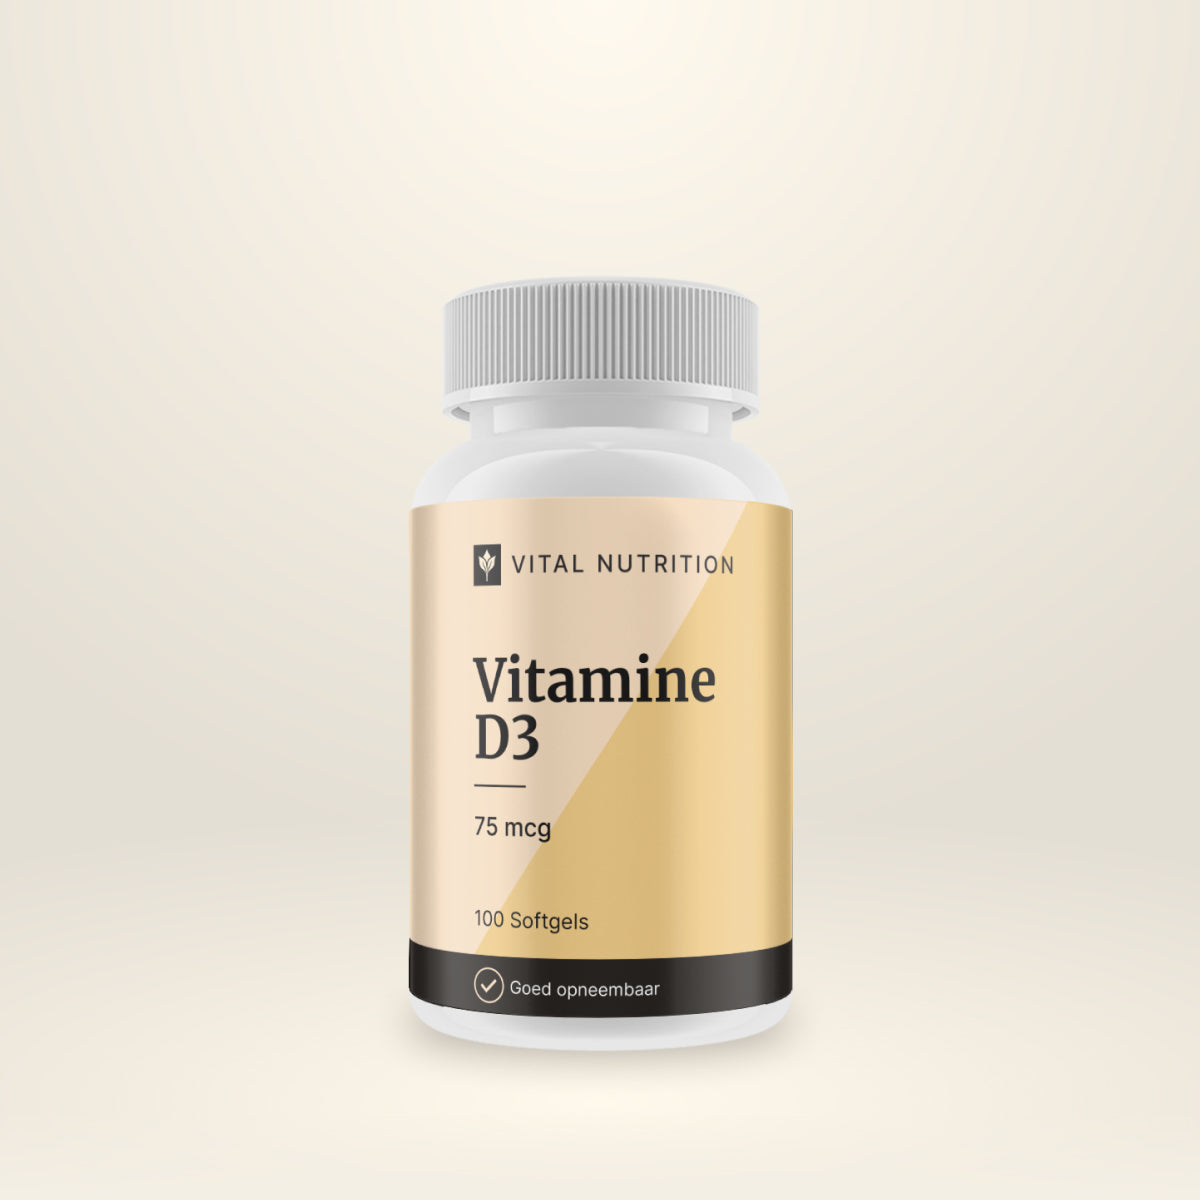 Vitamine D3 75mcg van Vital Nutrition product afbeelding